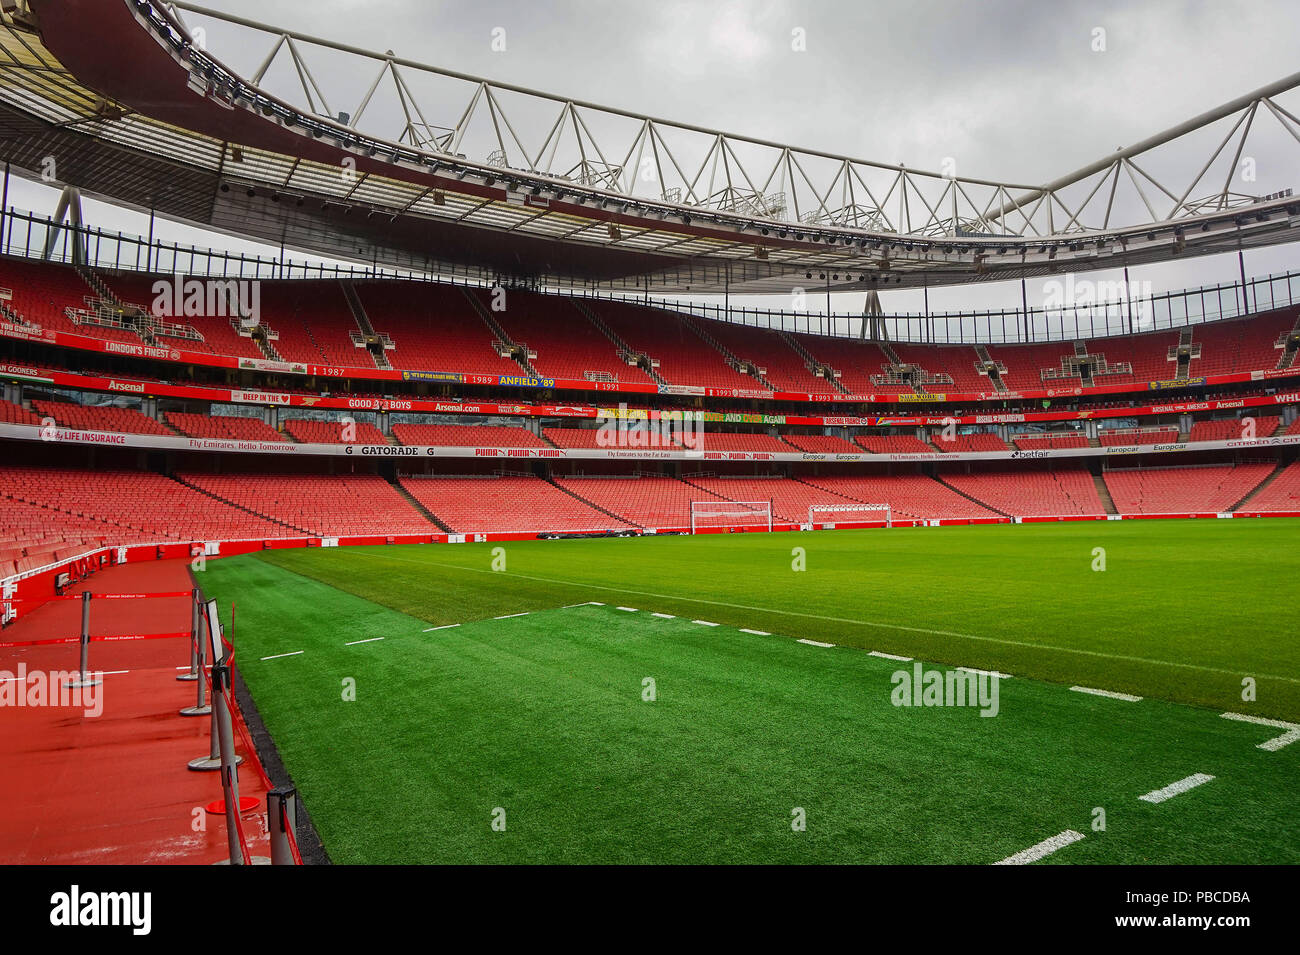 Arsenal Emirates Stadion mit einer Kapazität von über 60.000 ist sie die drittgrößte Fußballstadion in England nach Wembley und Old Trafford. Stockfoto